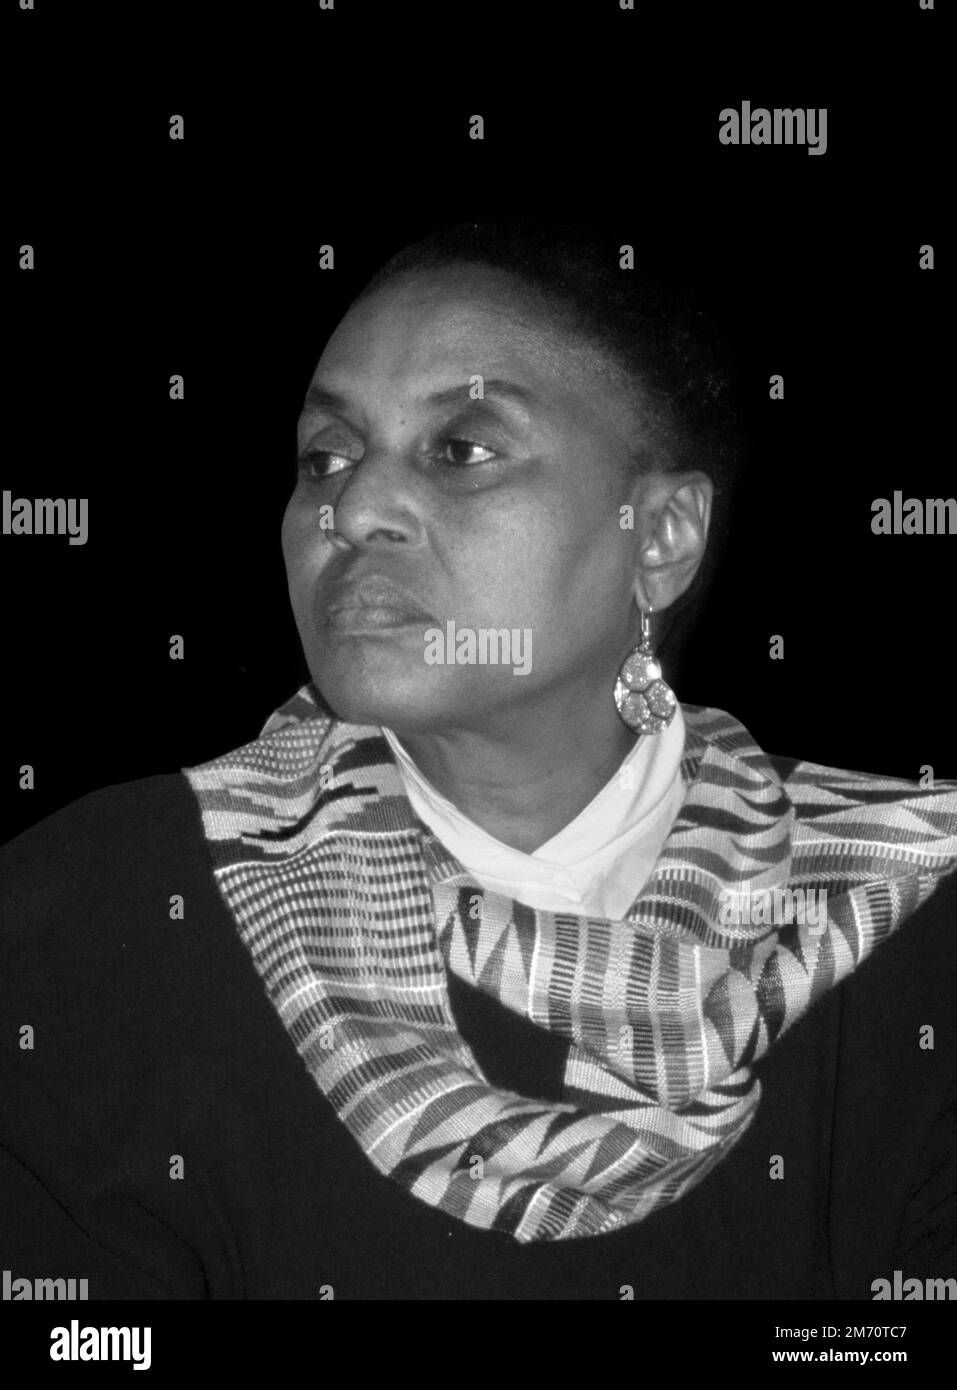 Miriam Makeba. Portrait des südafrikanischen Sängers und Songwriters Zenzile Miriam Makeba (1932-2008), Foto von Bernard Gotfryd, 1986 Stockfoto